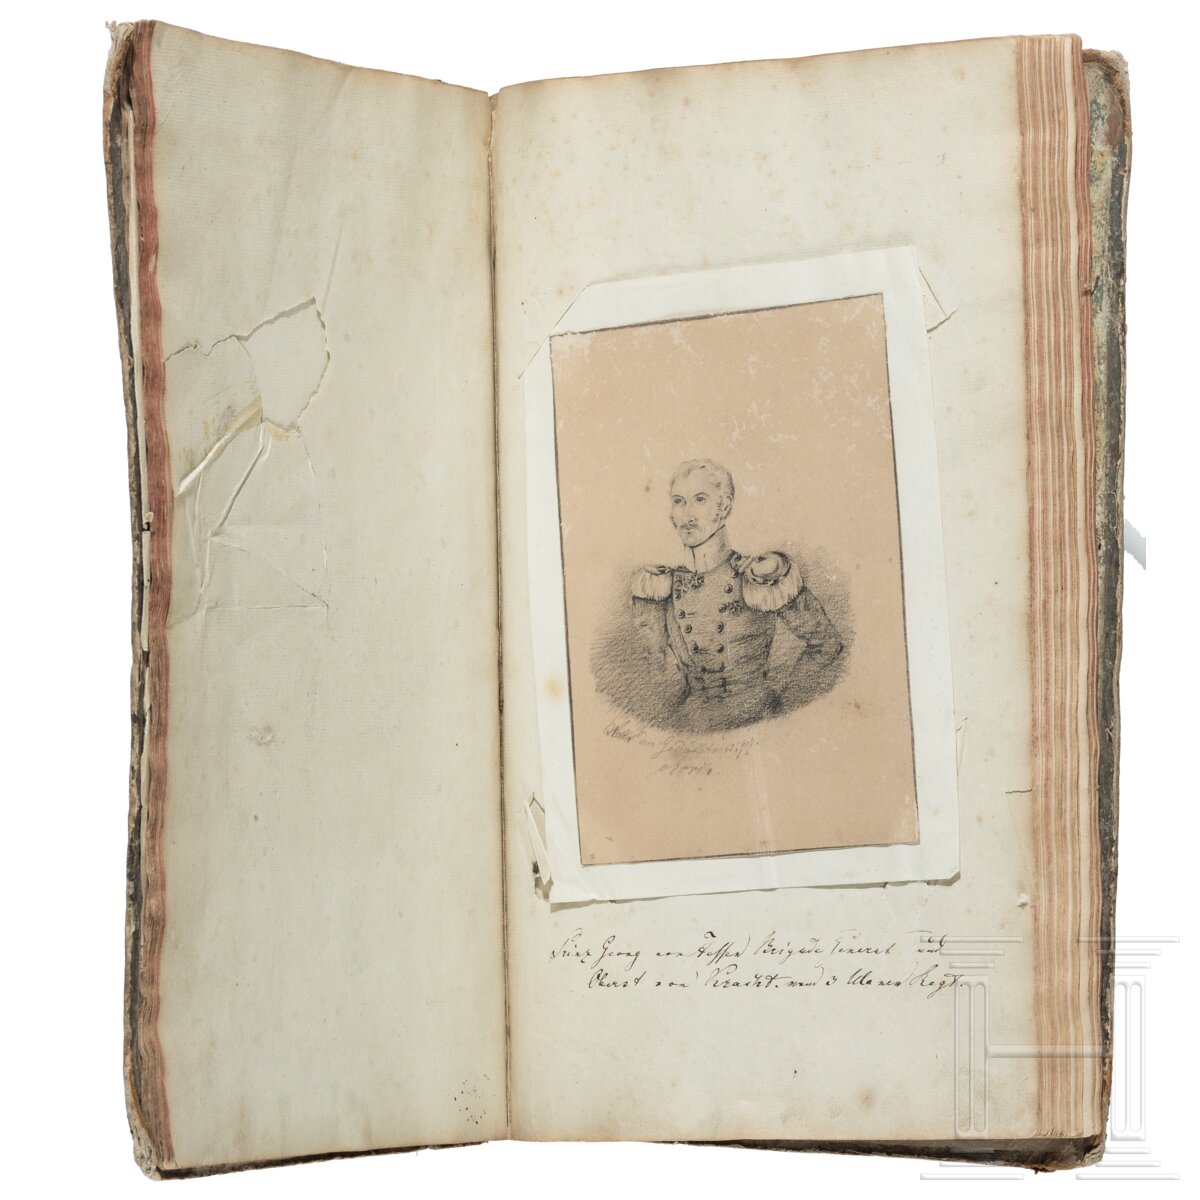 Album mit handgezeichneten Offiziersportraits, um 1830 - 1850 - Image 7 of 10